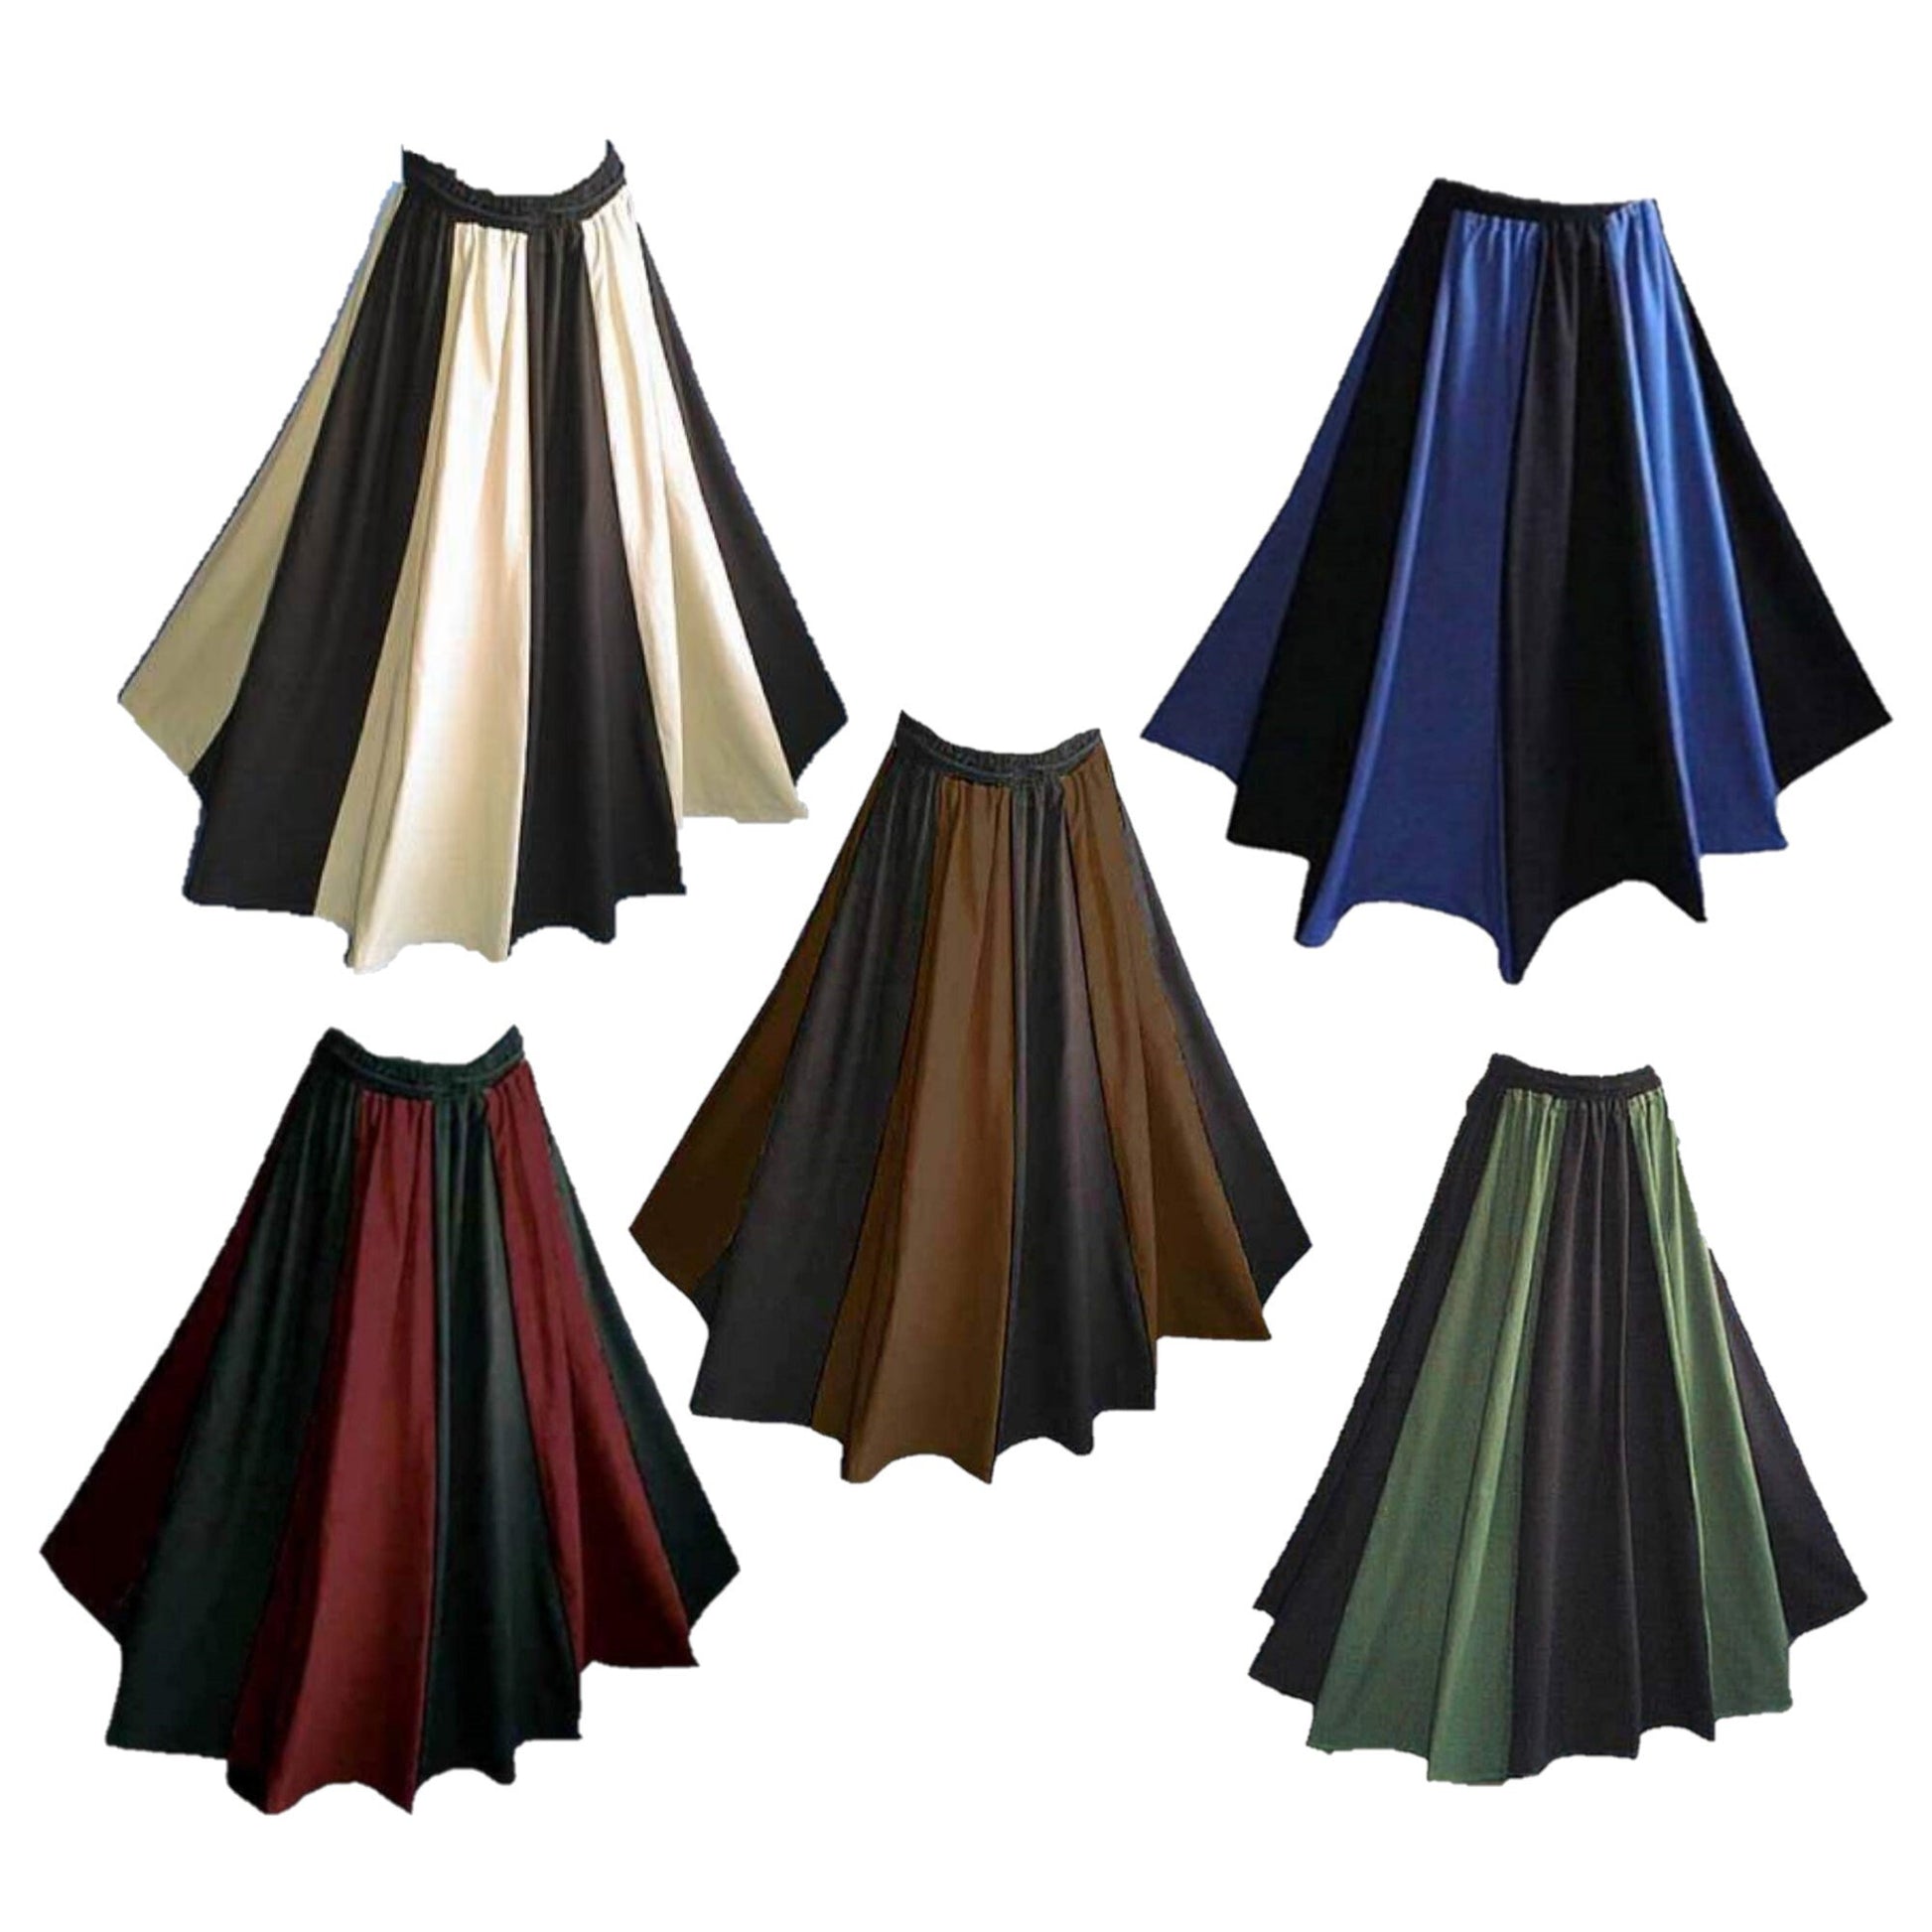 Women's Renaissance Striped Skirt